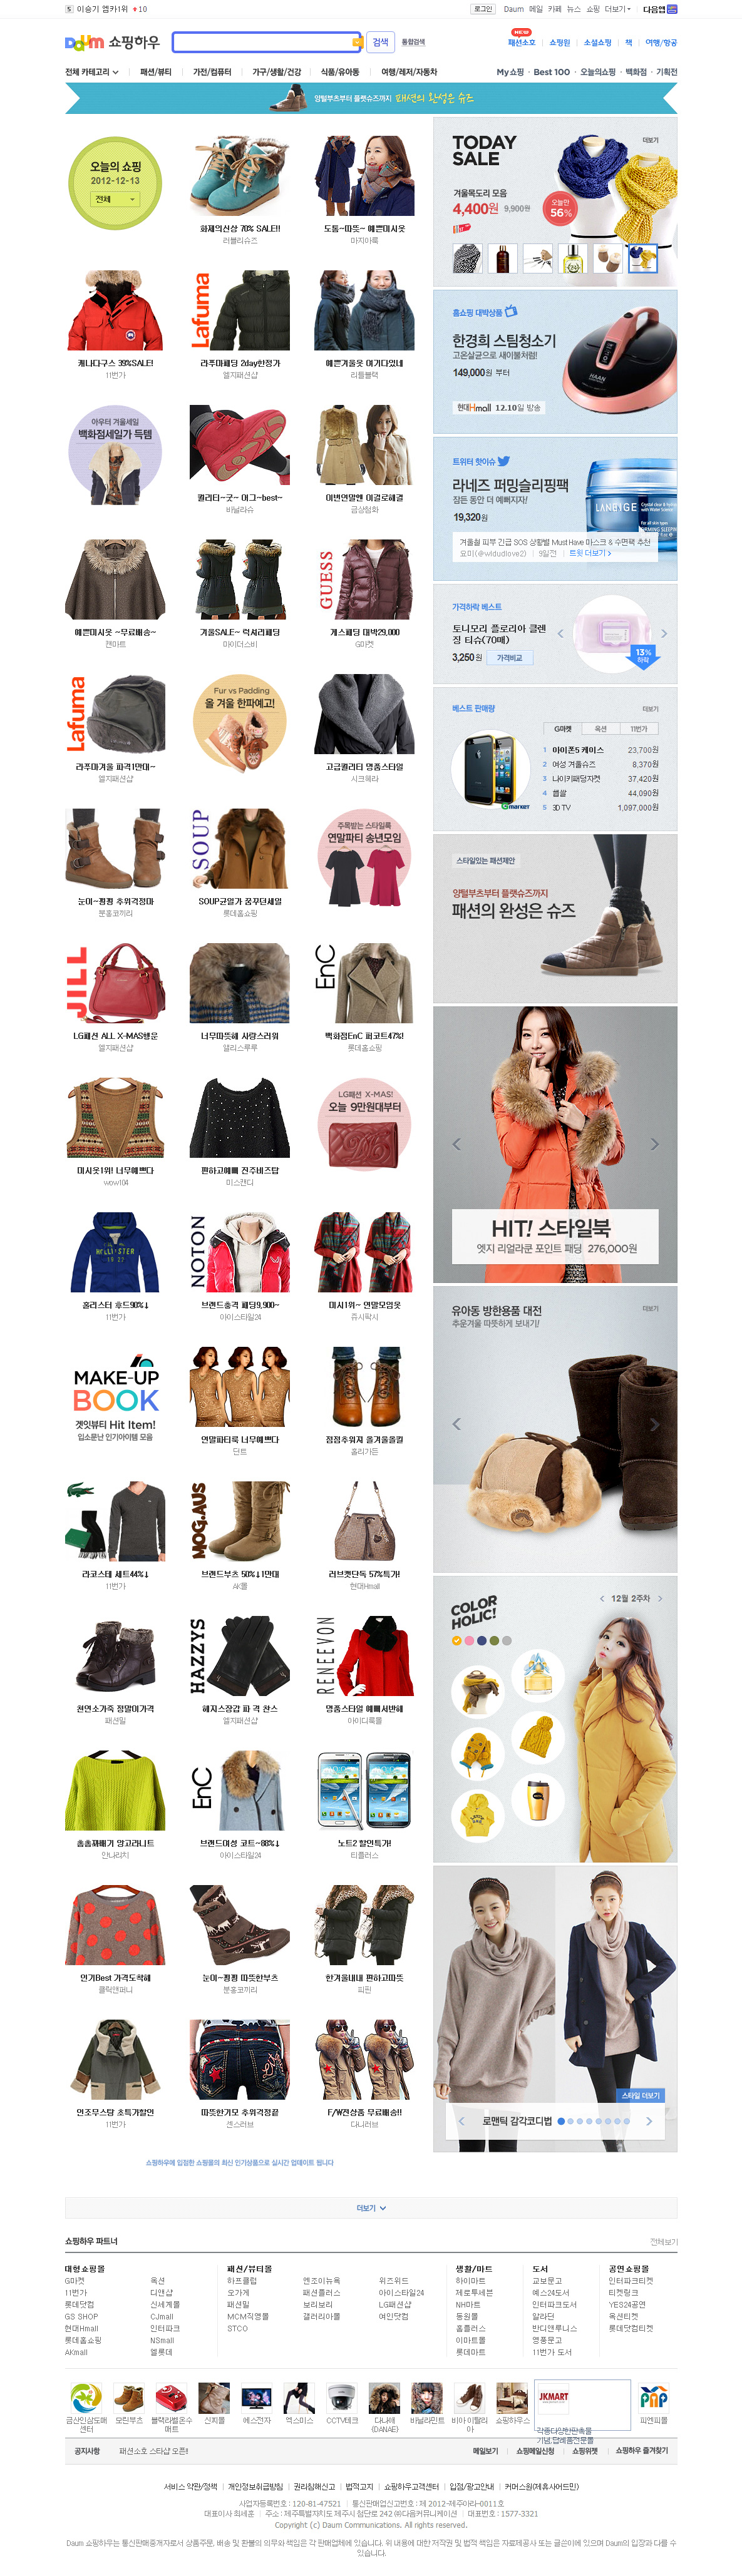 DAUM购物频道，daum是韩国最大的门户网站之一。